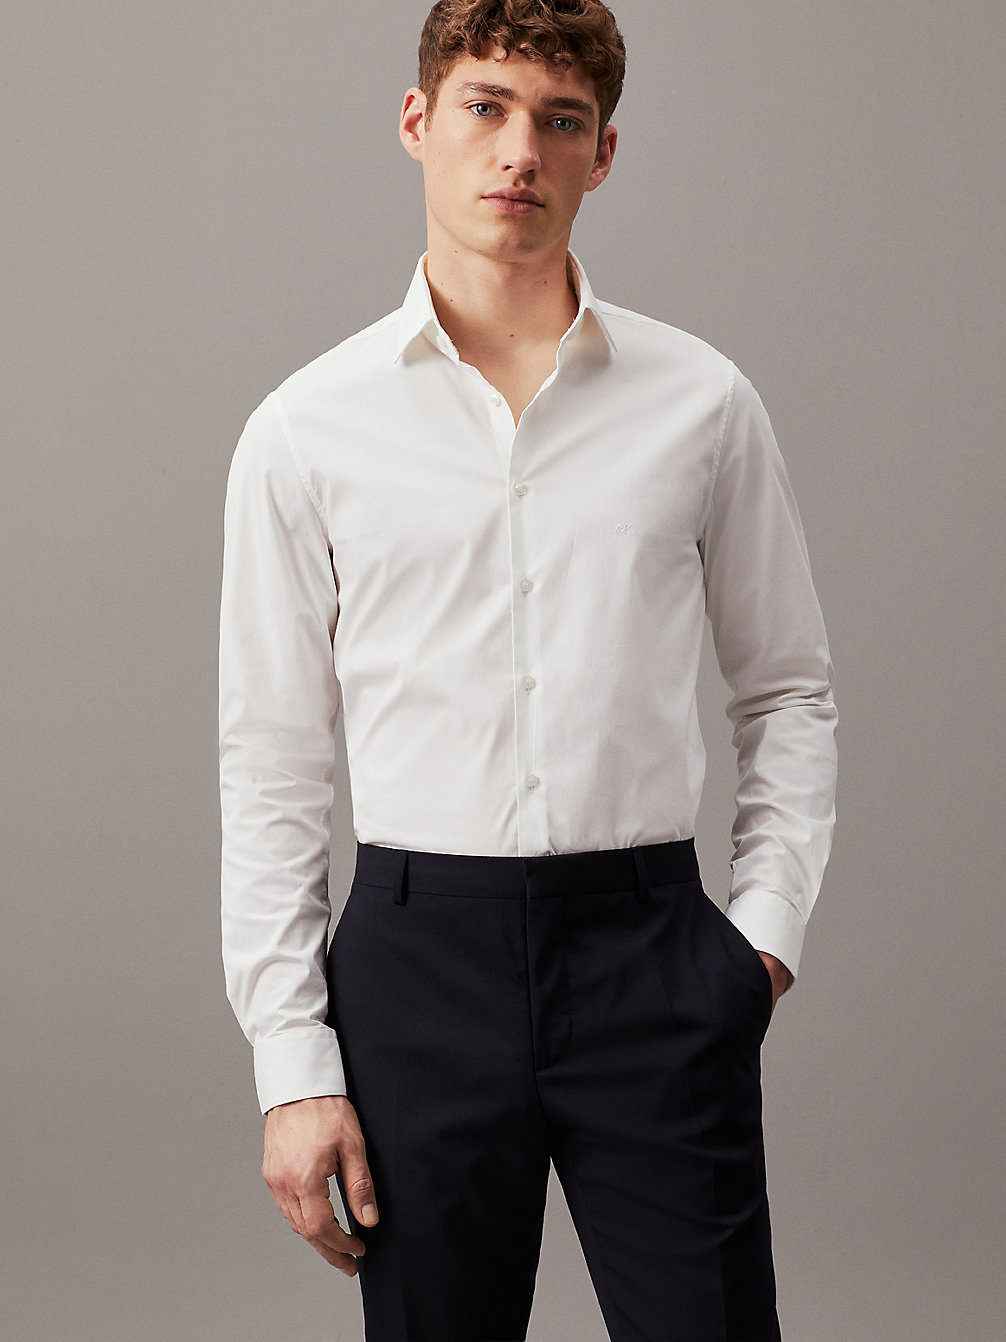 WHITE > Wąska Elegancka Koszula Z Popeliny > undefined Mężczyźni - Calvin Klein